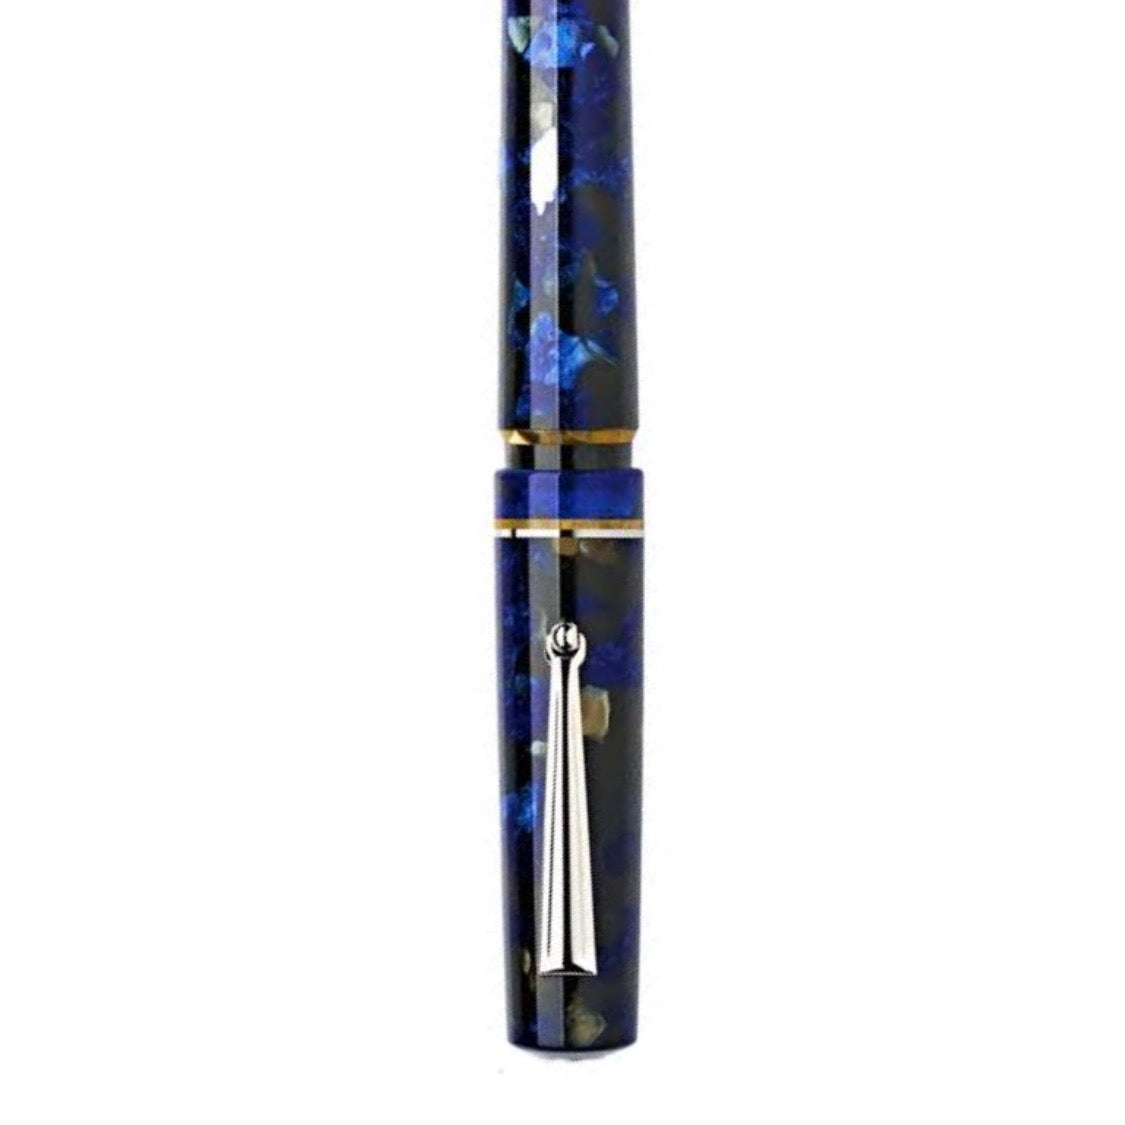 Delta Spaccanapoli Filomarino Blue  - Fountain Pen